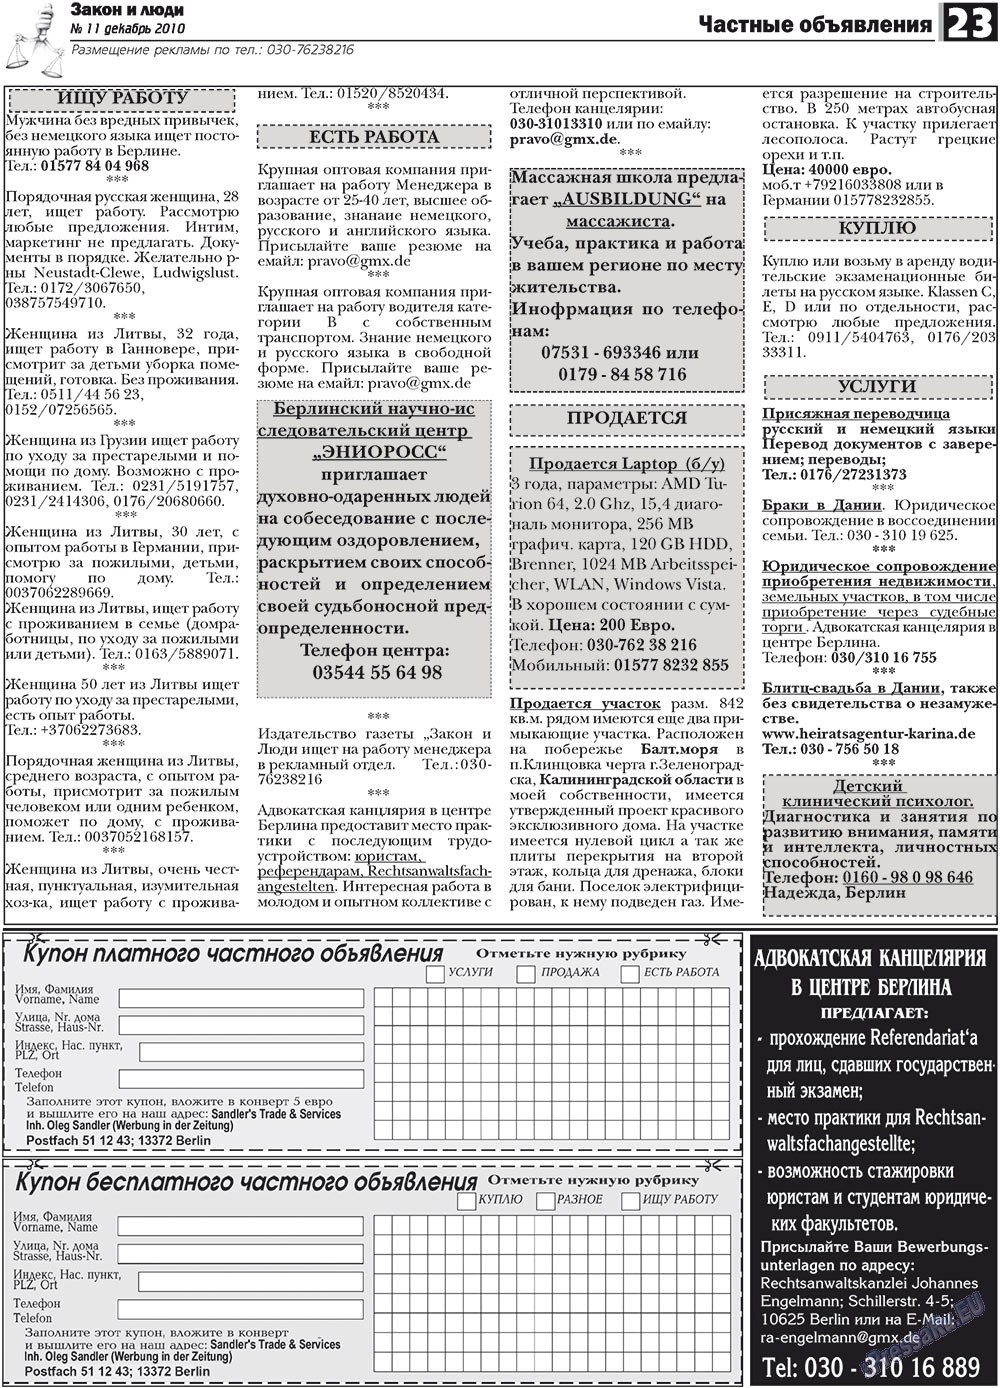 Закон и люди, газета. 2010 №11 стр.23